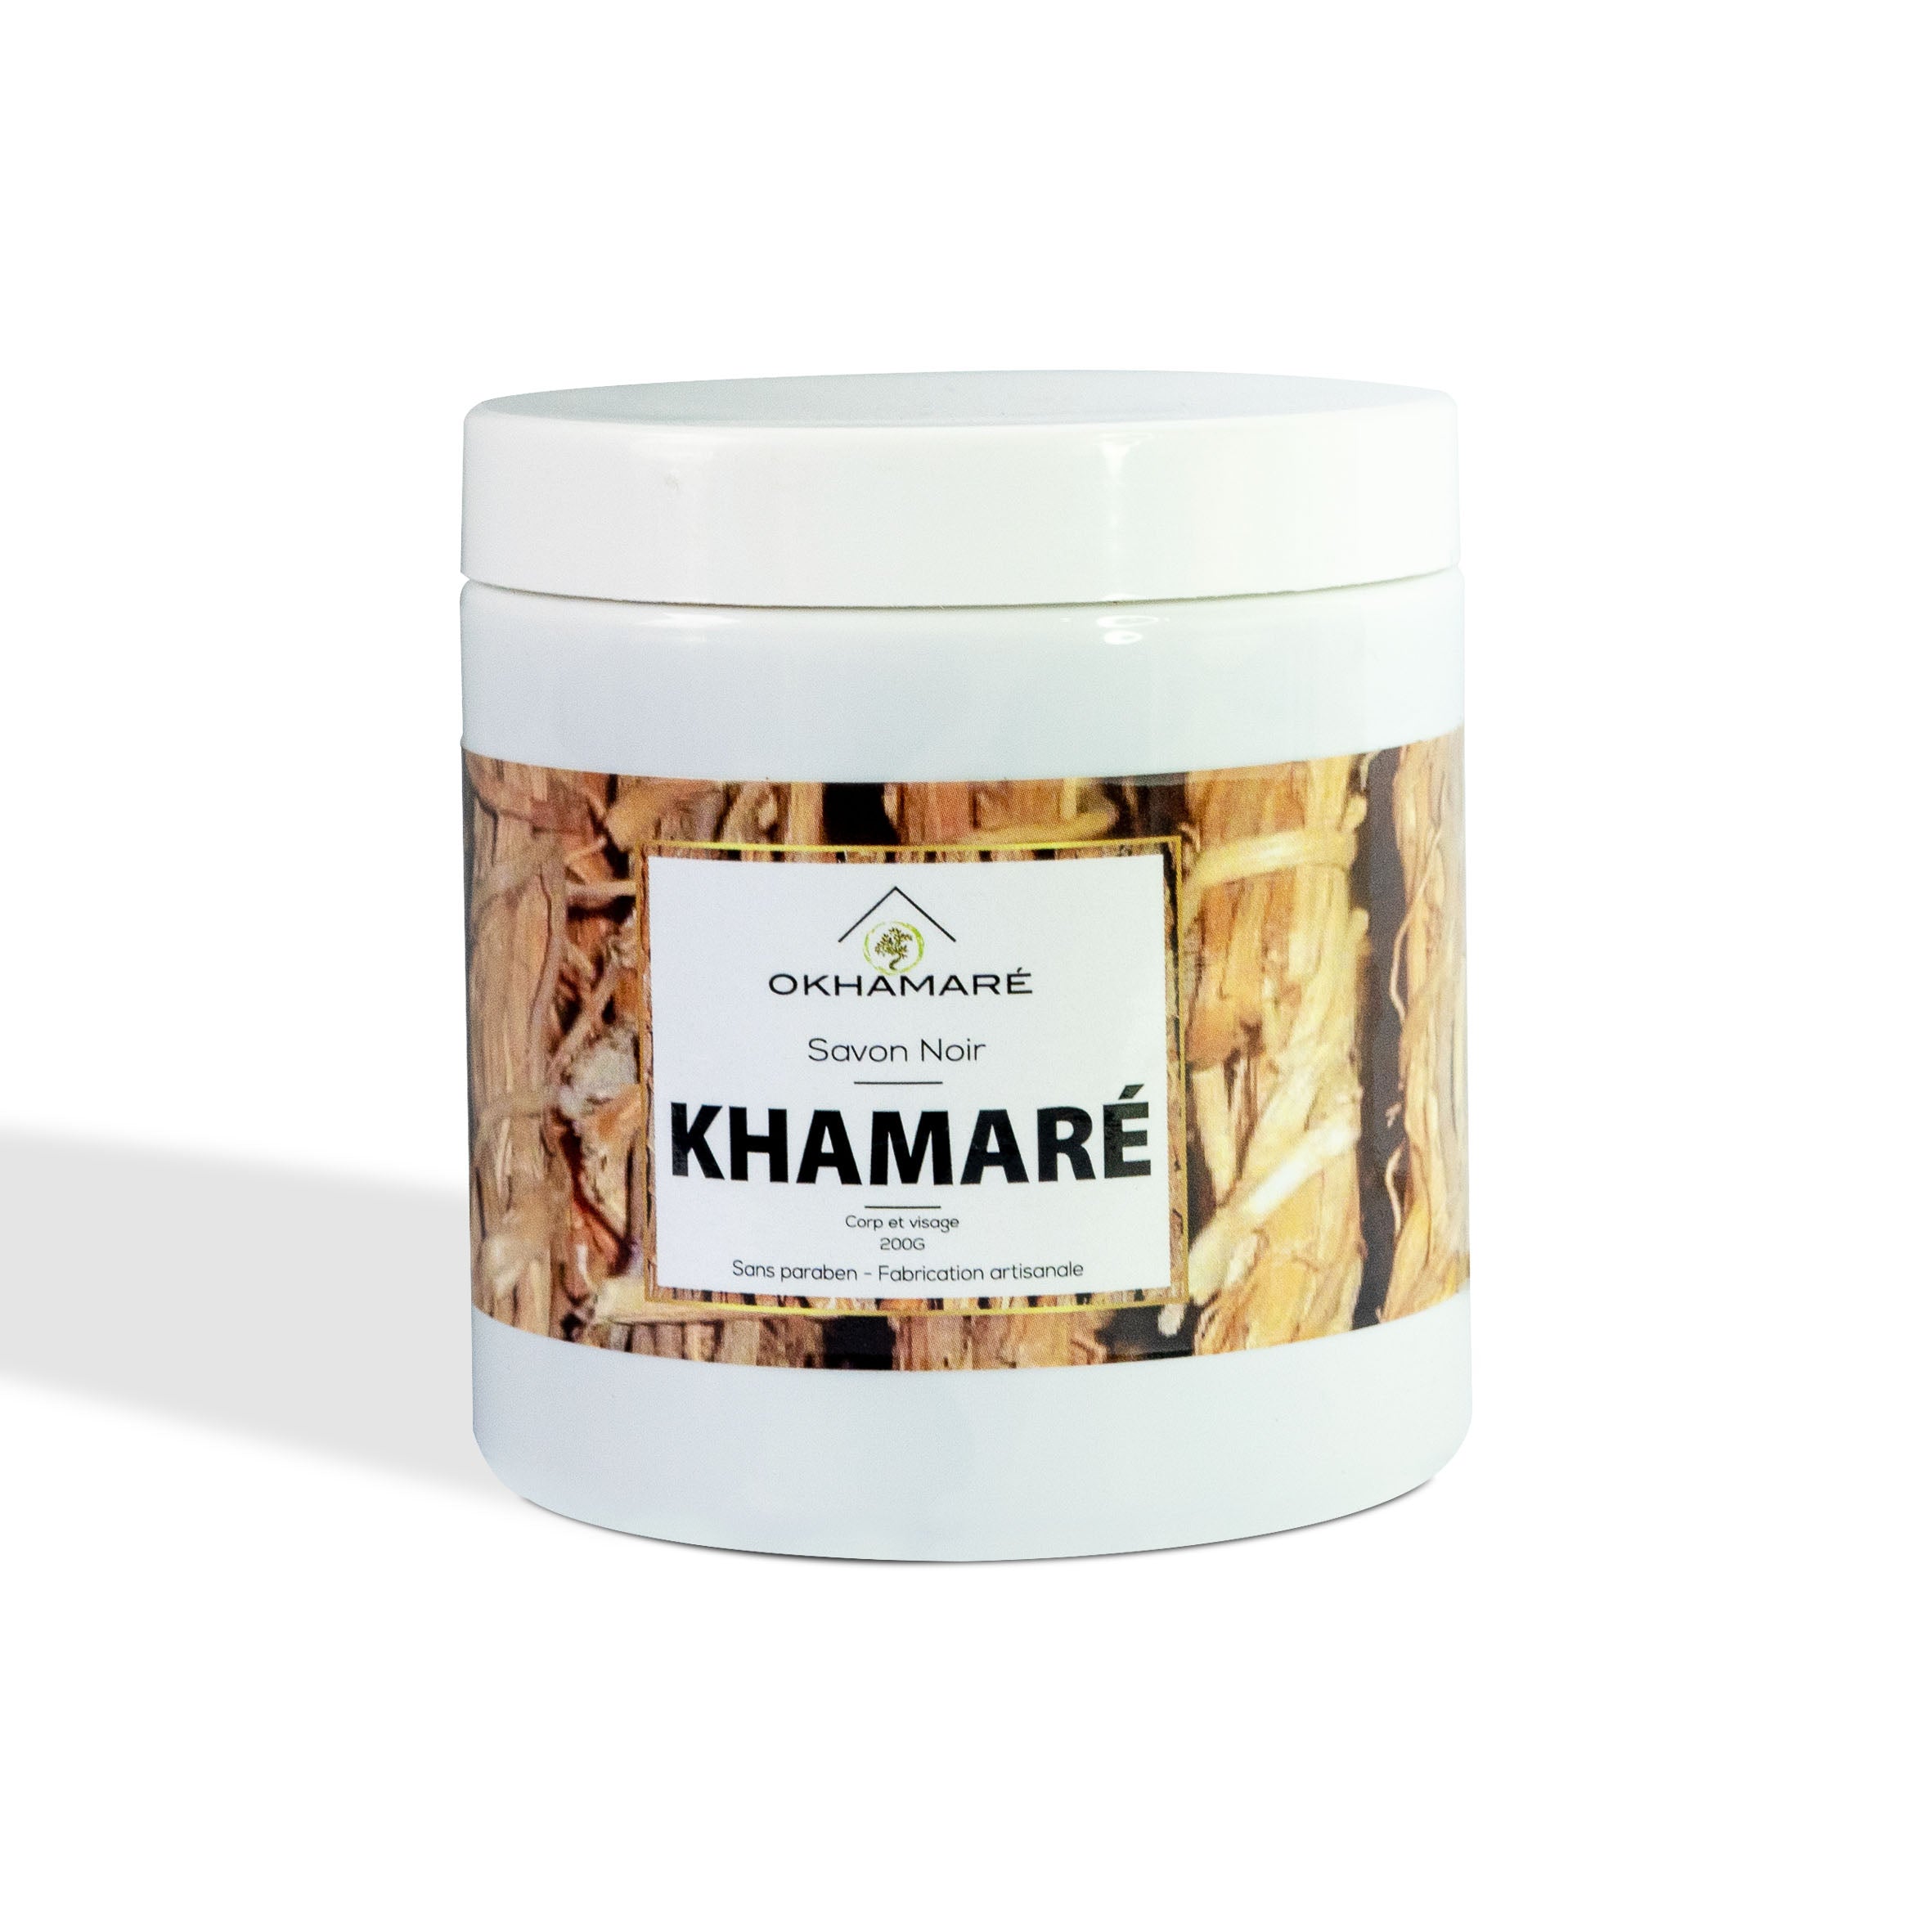 Le Khamaré – Okhamaré